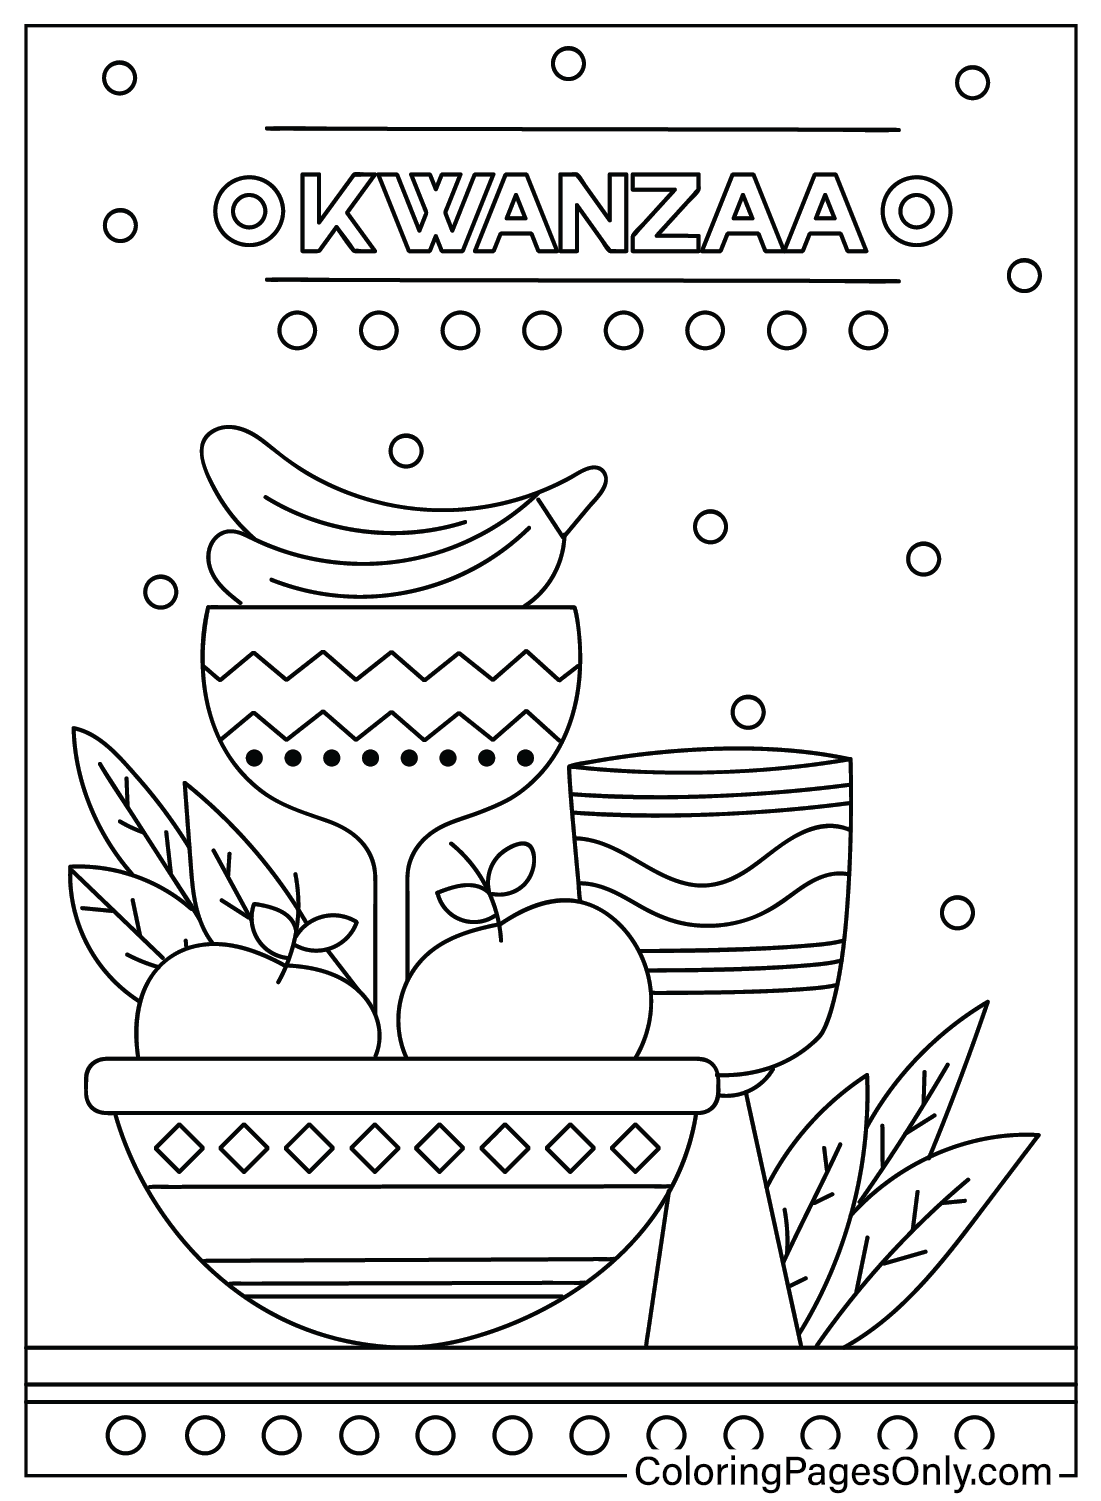 Página colorida grátis Kwanzaa de Kwanzaa